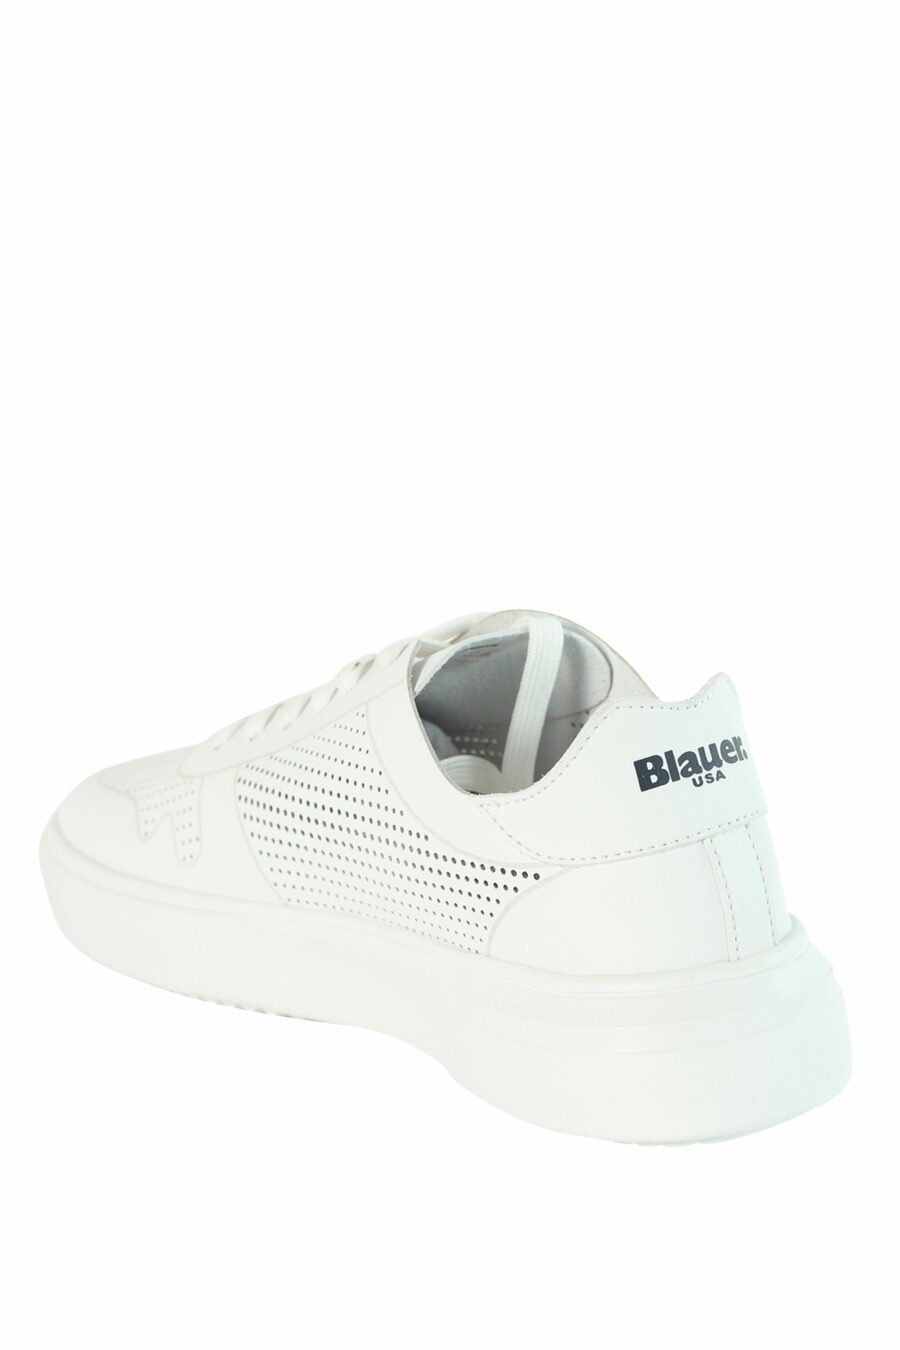 Zapatillas blancas "BLAIR" transpirables con logo negro - 8058156492073 4